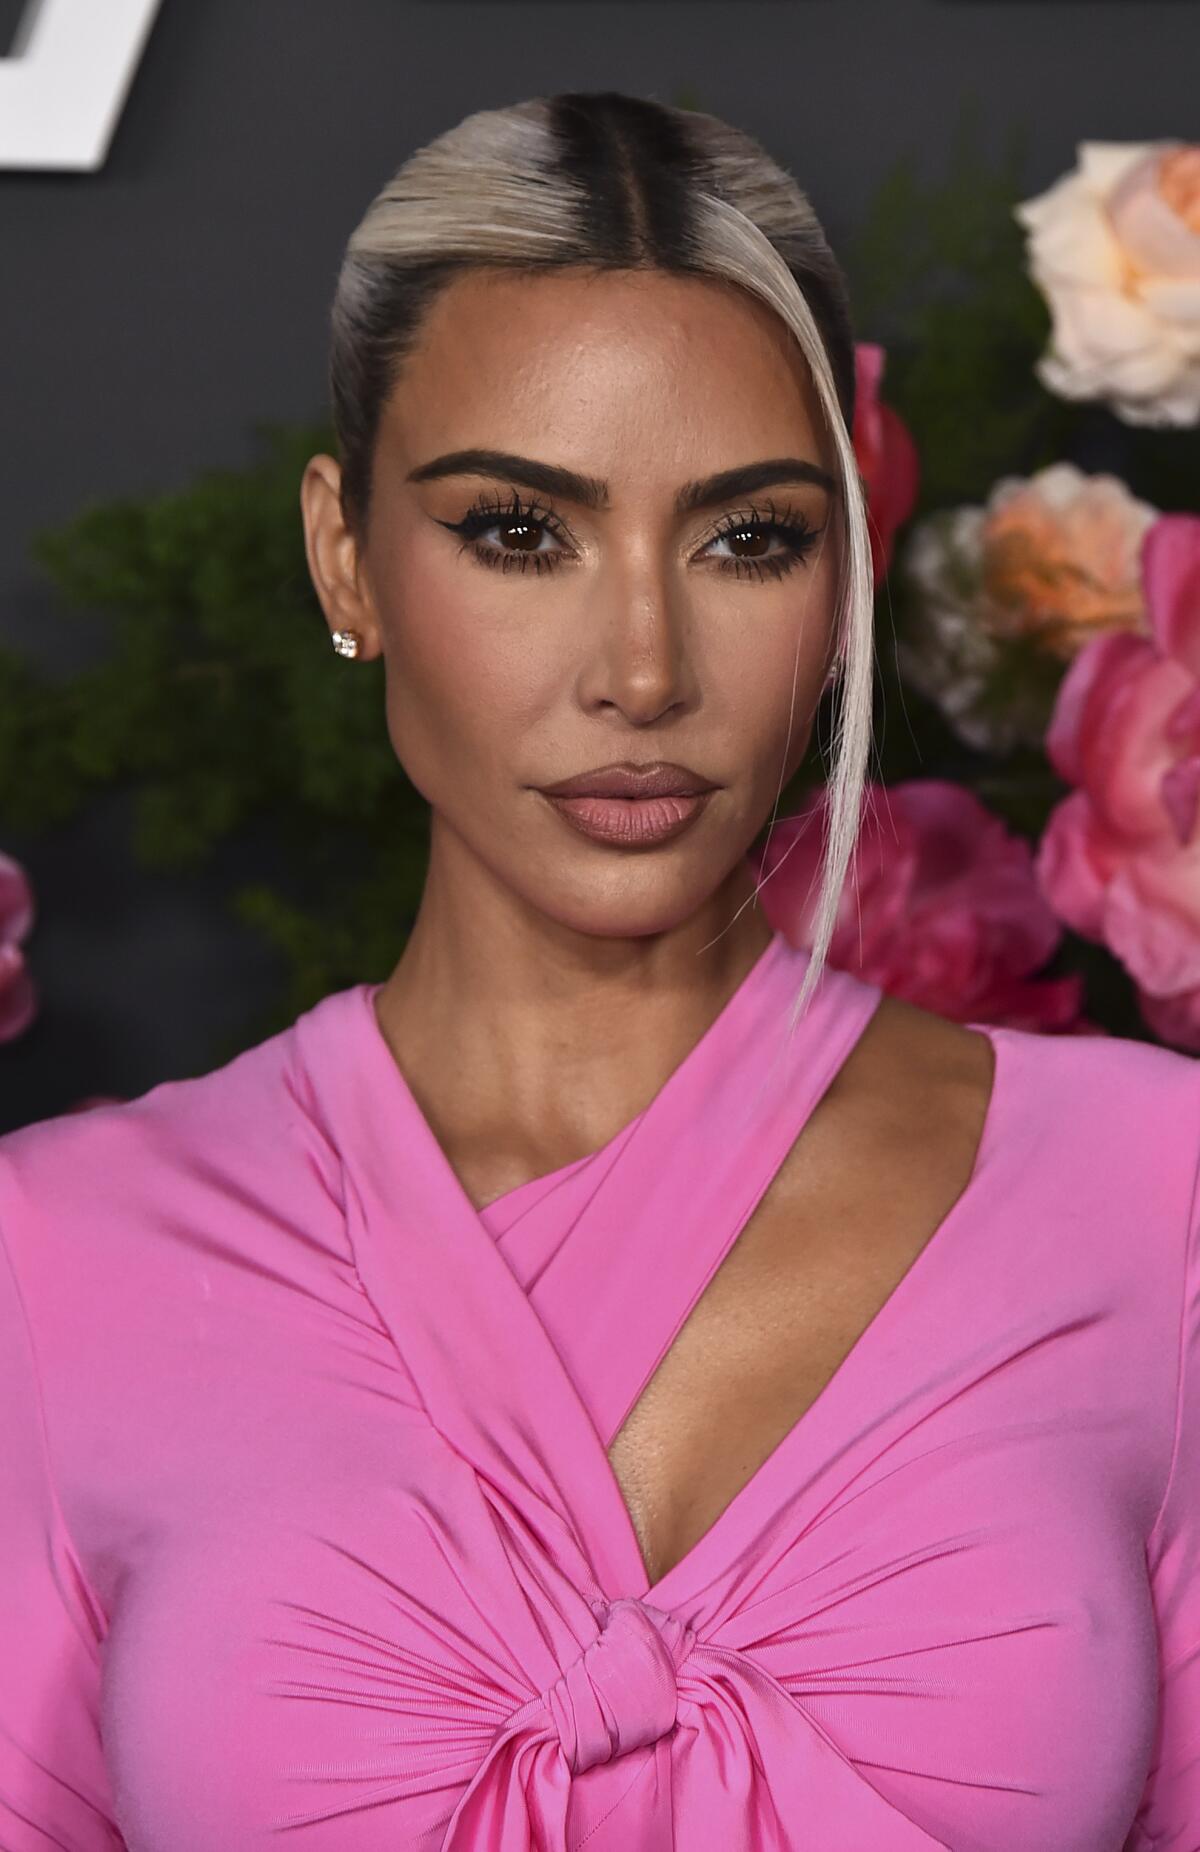 Kim Kardashian posiert in einem pinkfarbenen Top mit gebleichten Strähnen im Haar